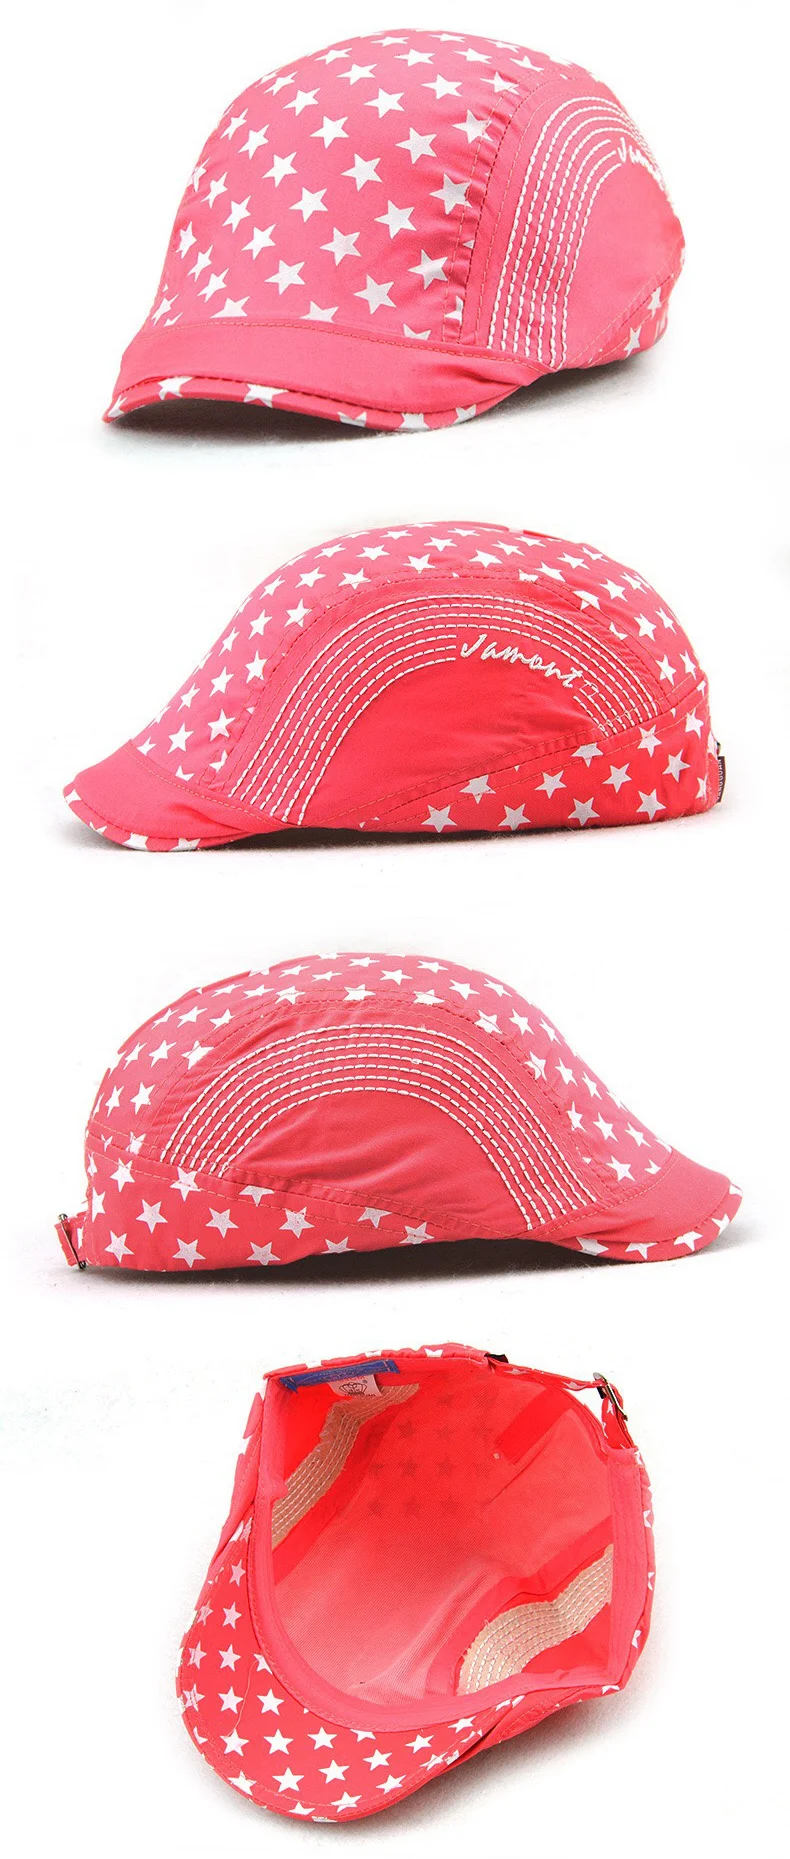 TOHUIYAN/Детская Милая кепка газетчика для девочек, шляпа для мальчика Boina, плоская кепка, осенне-летние фуражки для детей